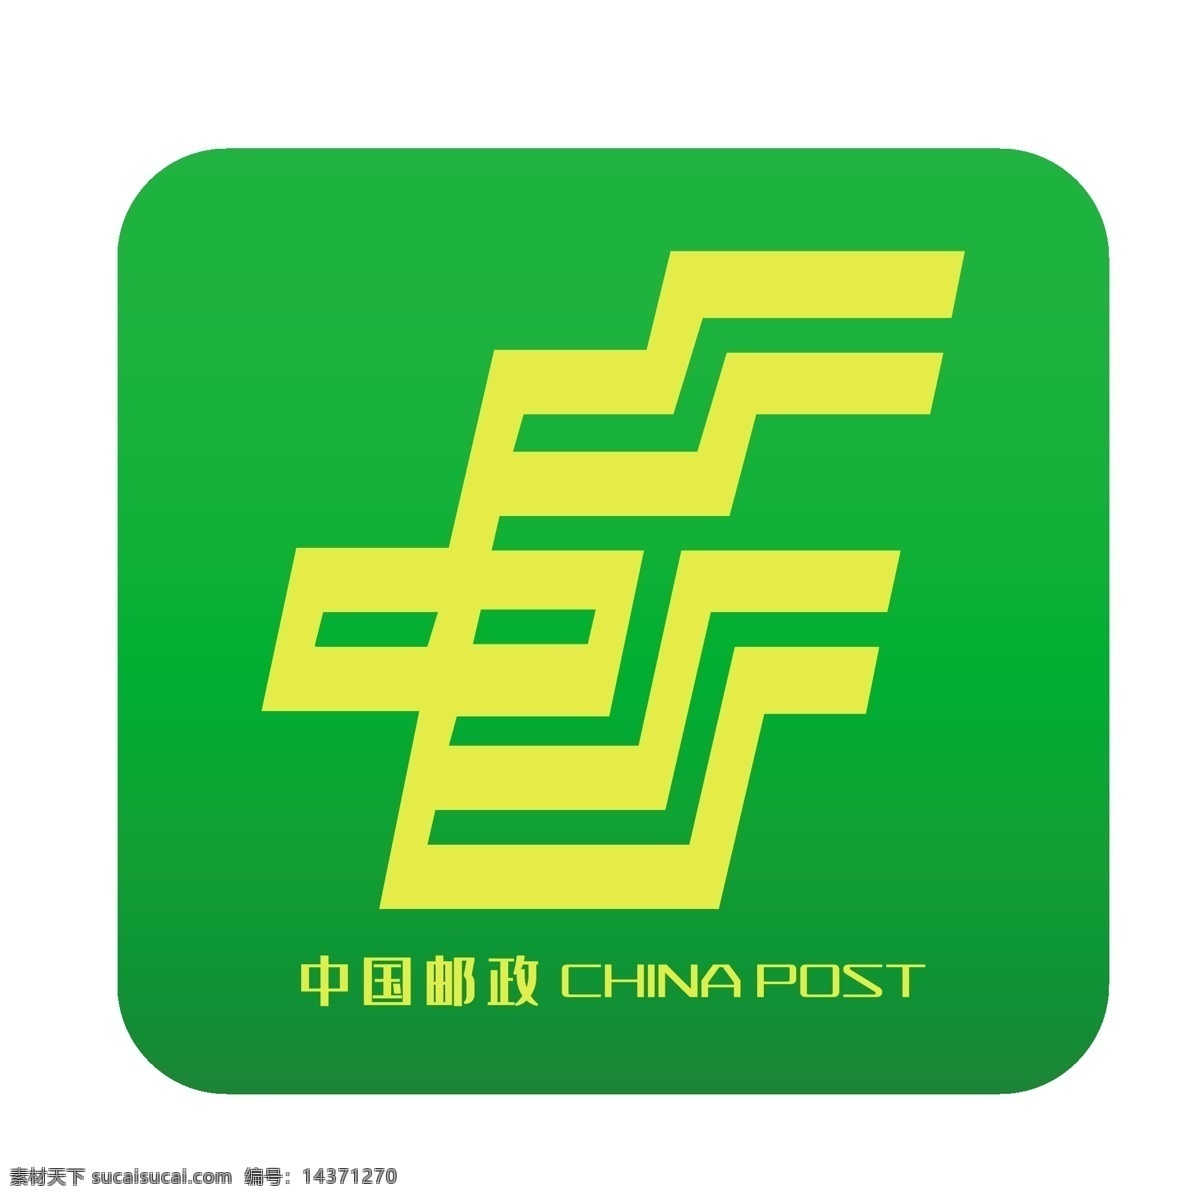 中国 邮政 logo 图标 中国邮政 logo图标 绿色图标 标志logo 中国邮政图标 千库原创 免抠图png